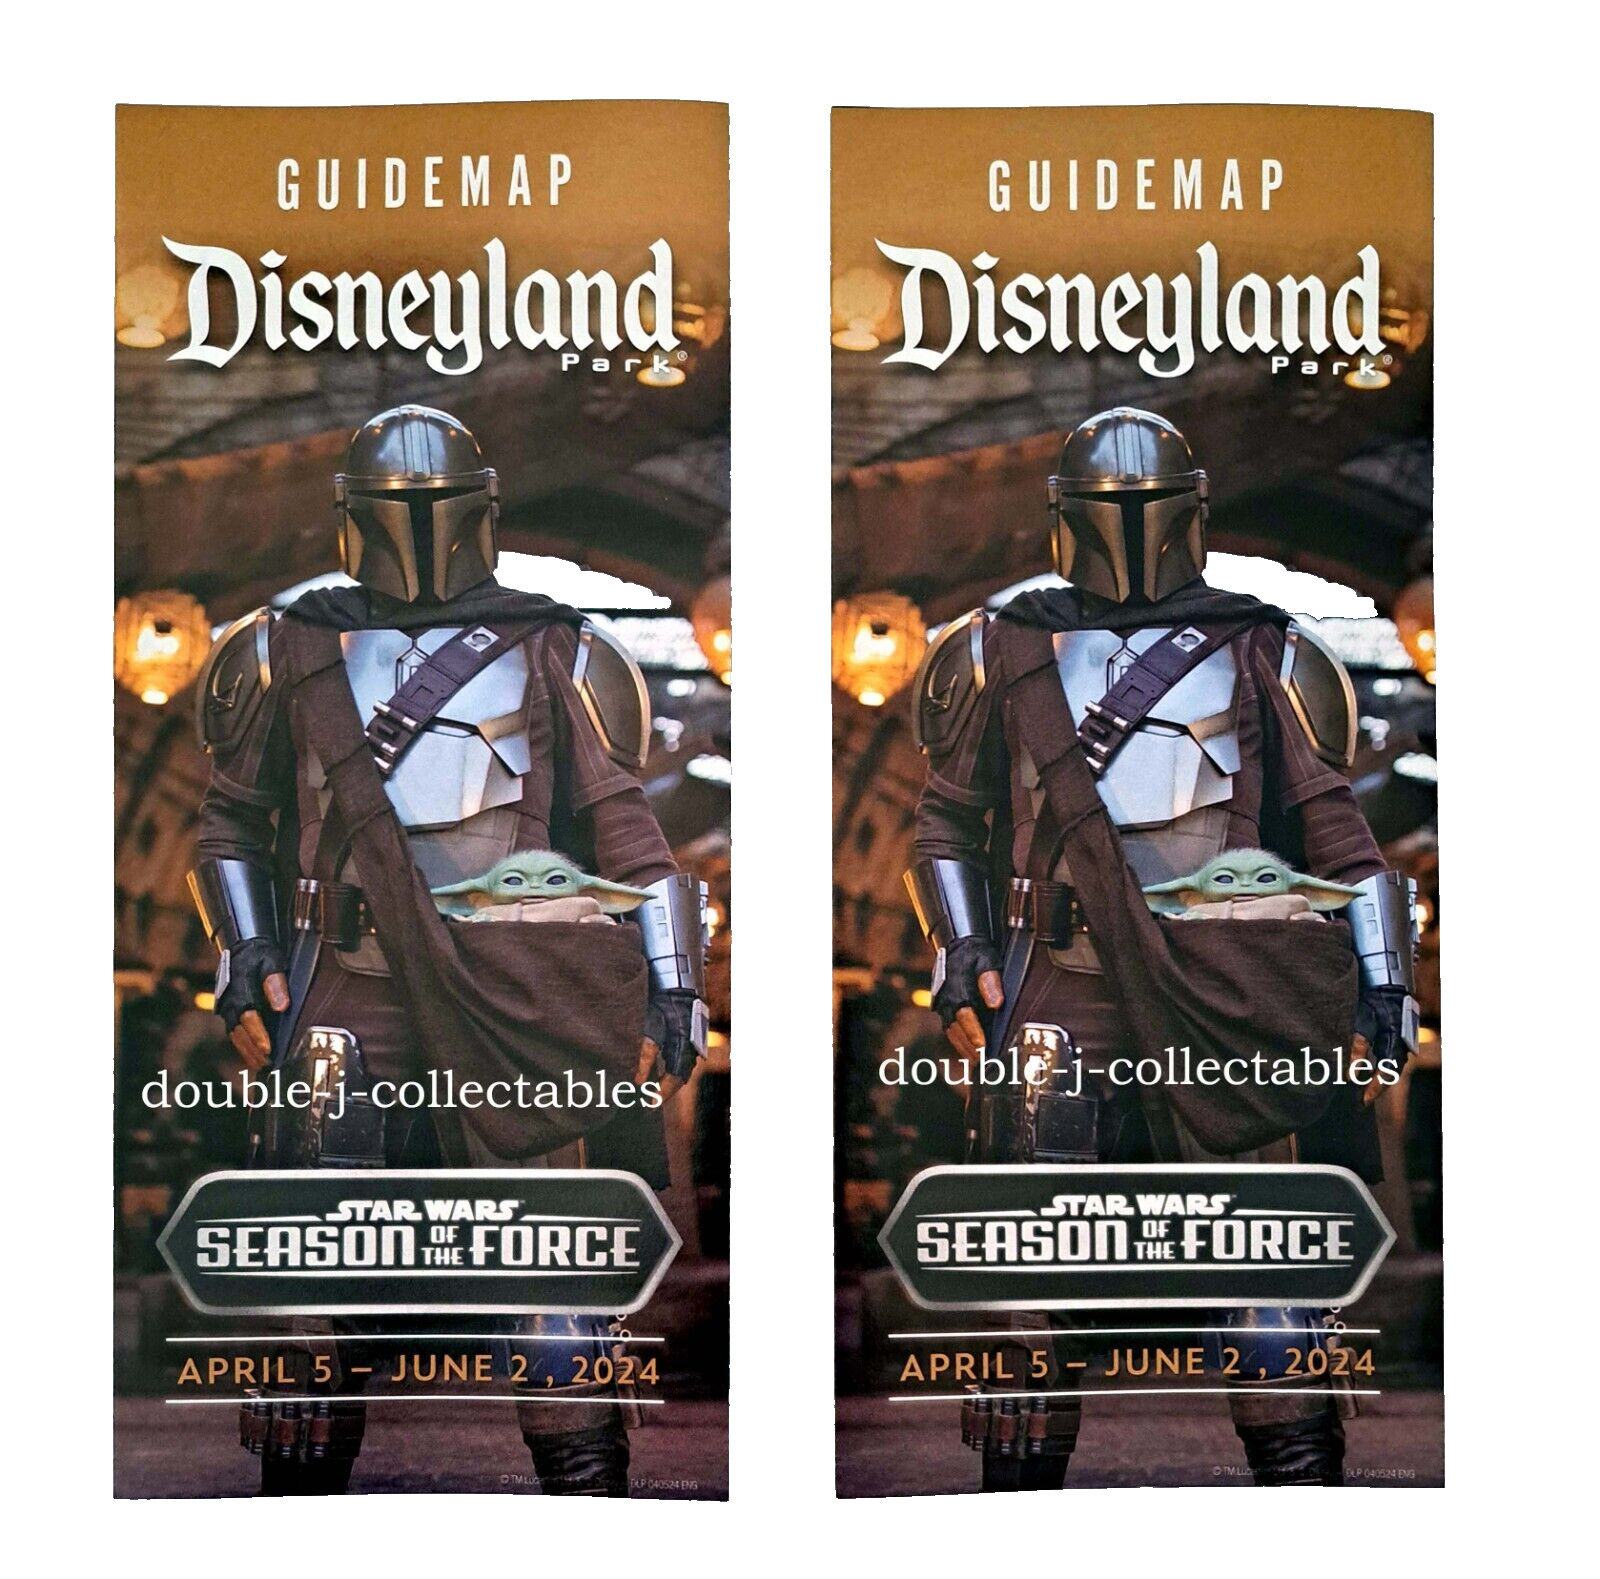 Disneyland 2 Guide Map Set Star Wars Season Of The Force April 5 - June 2, 2024